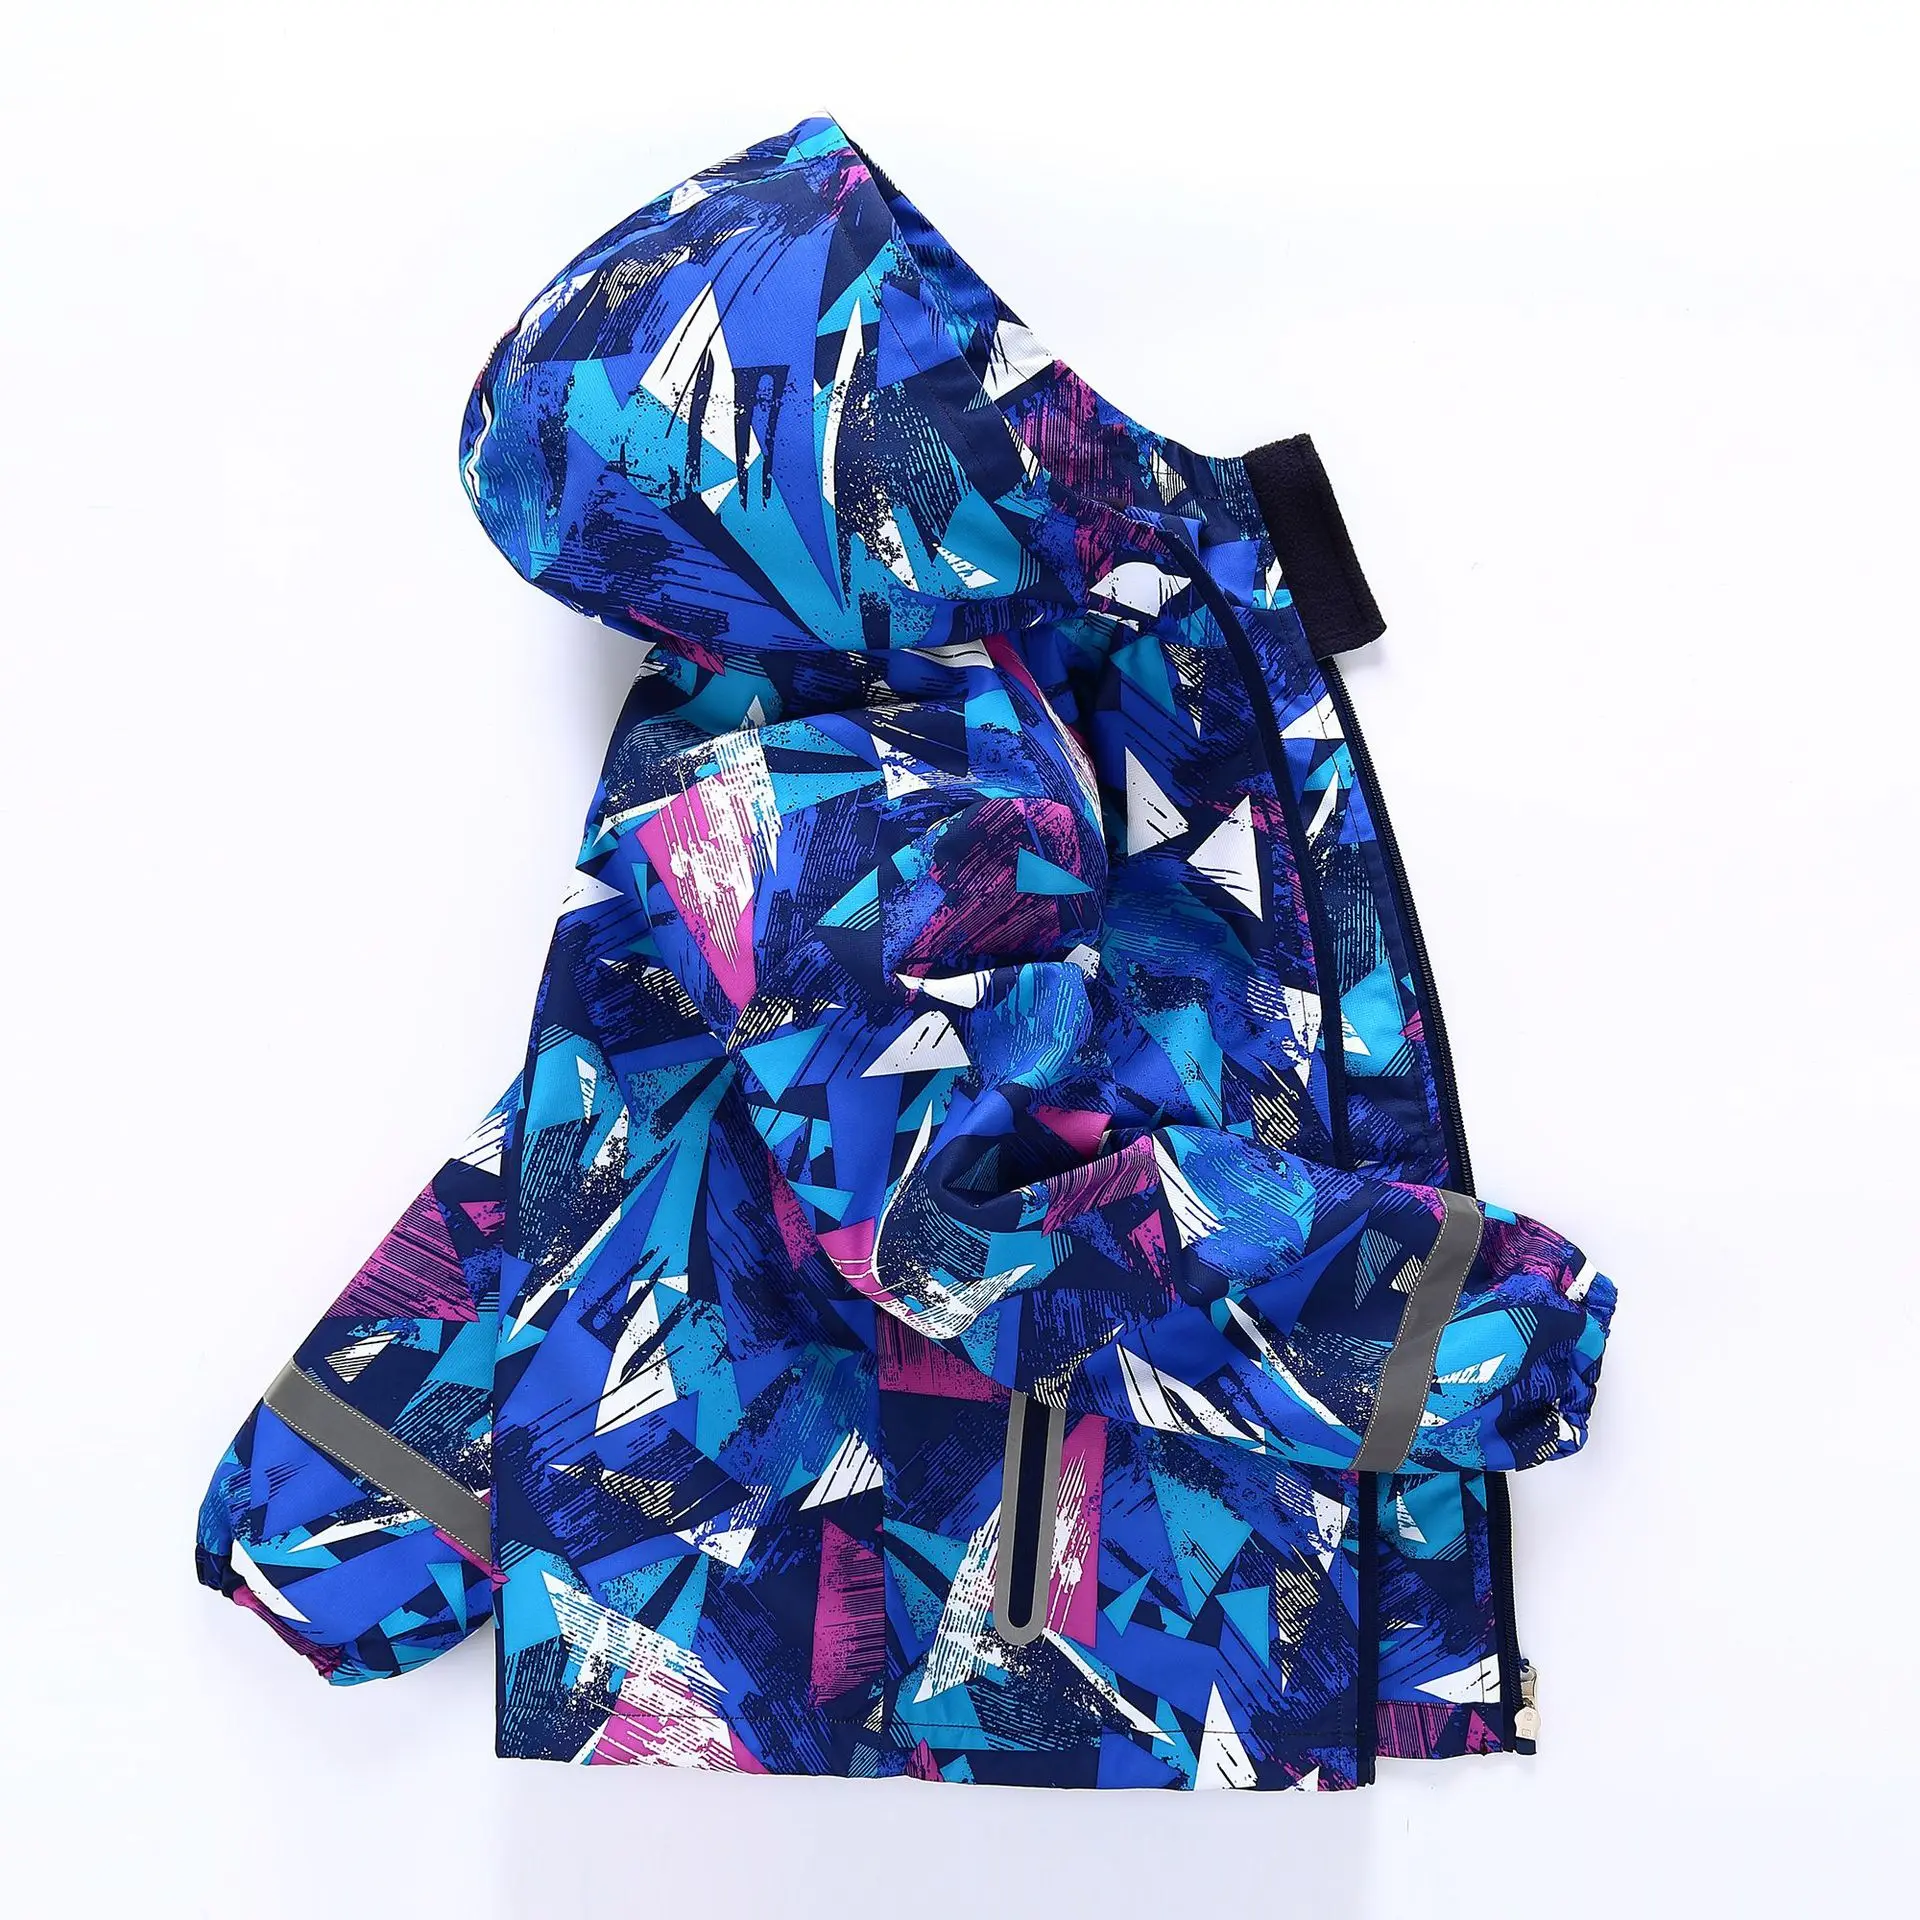 

Детская/демисезонная ветрозащитная водонепроницаемая куртка для мальчиков, куртка с геометрическим принтом и капюшоном, размеры 98-146